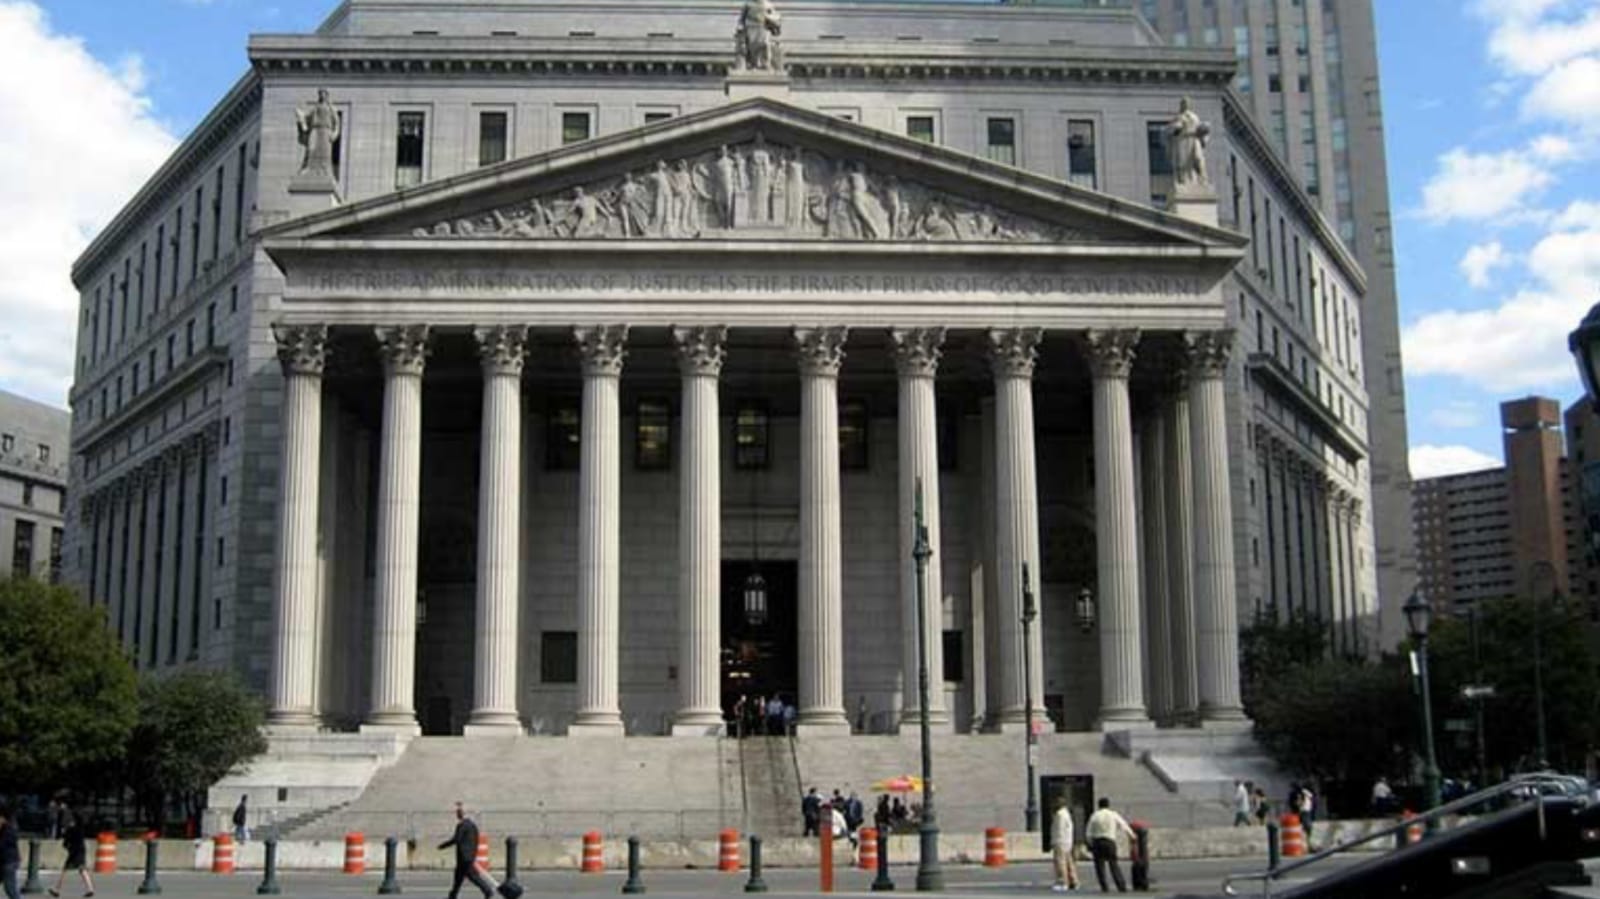 Corte federal del distrito sur de nueva york